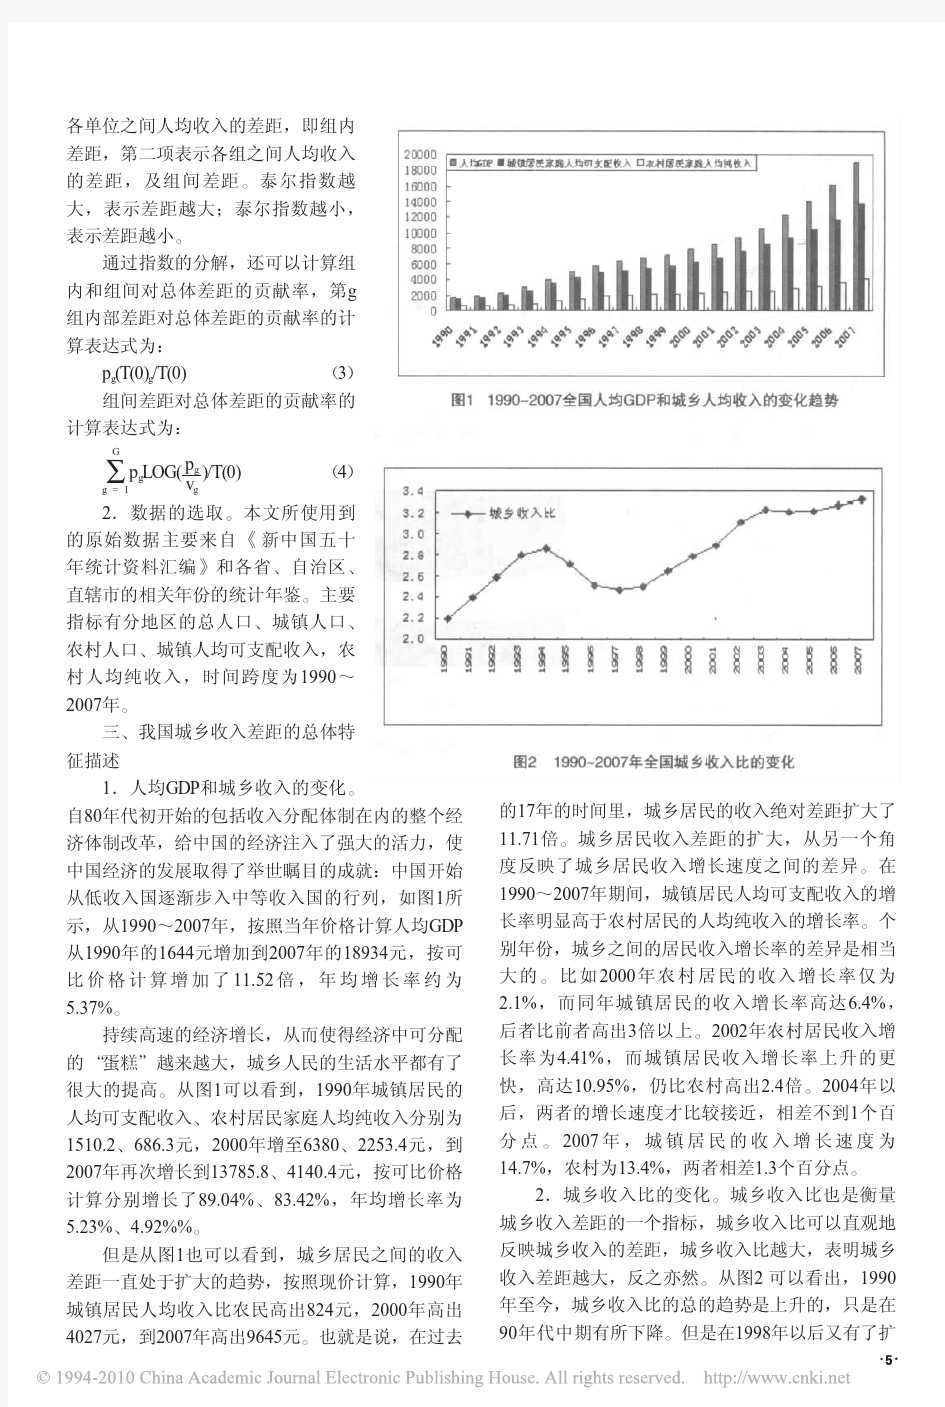 中国城乡收入差距分析_基于泰尔指数的分解_王红涛[1]